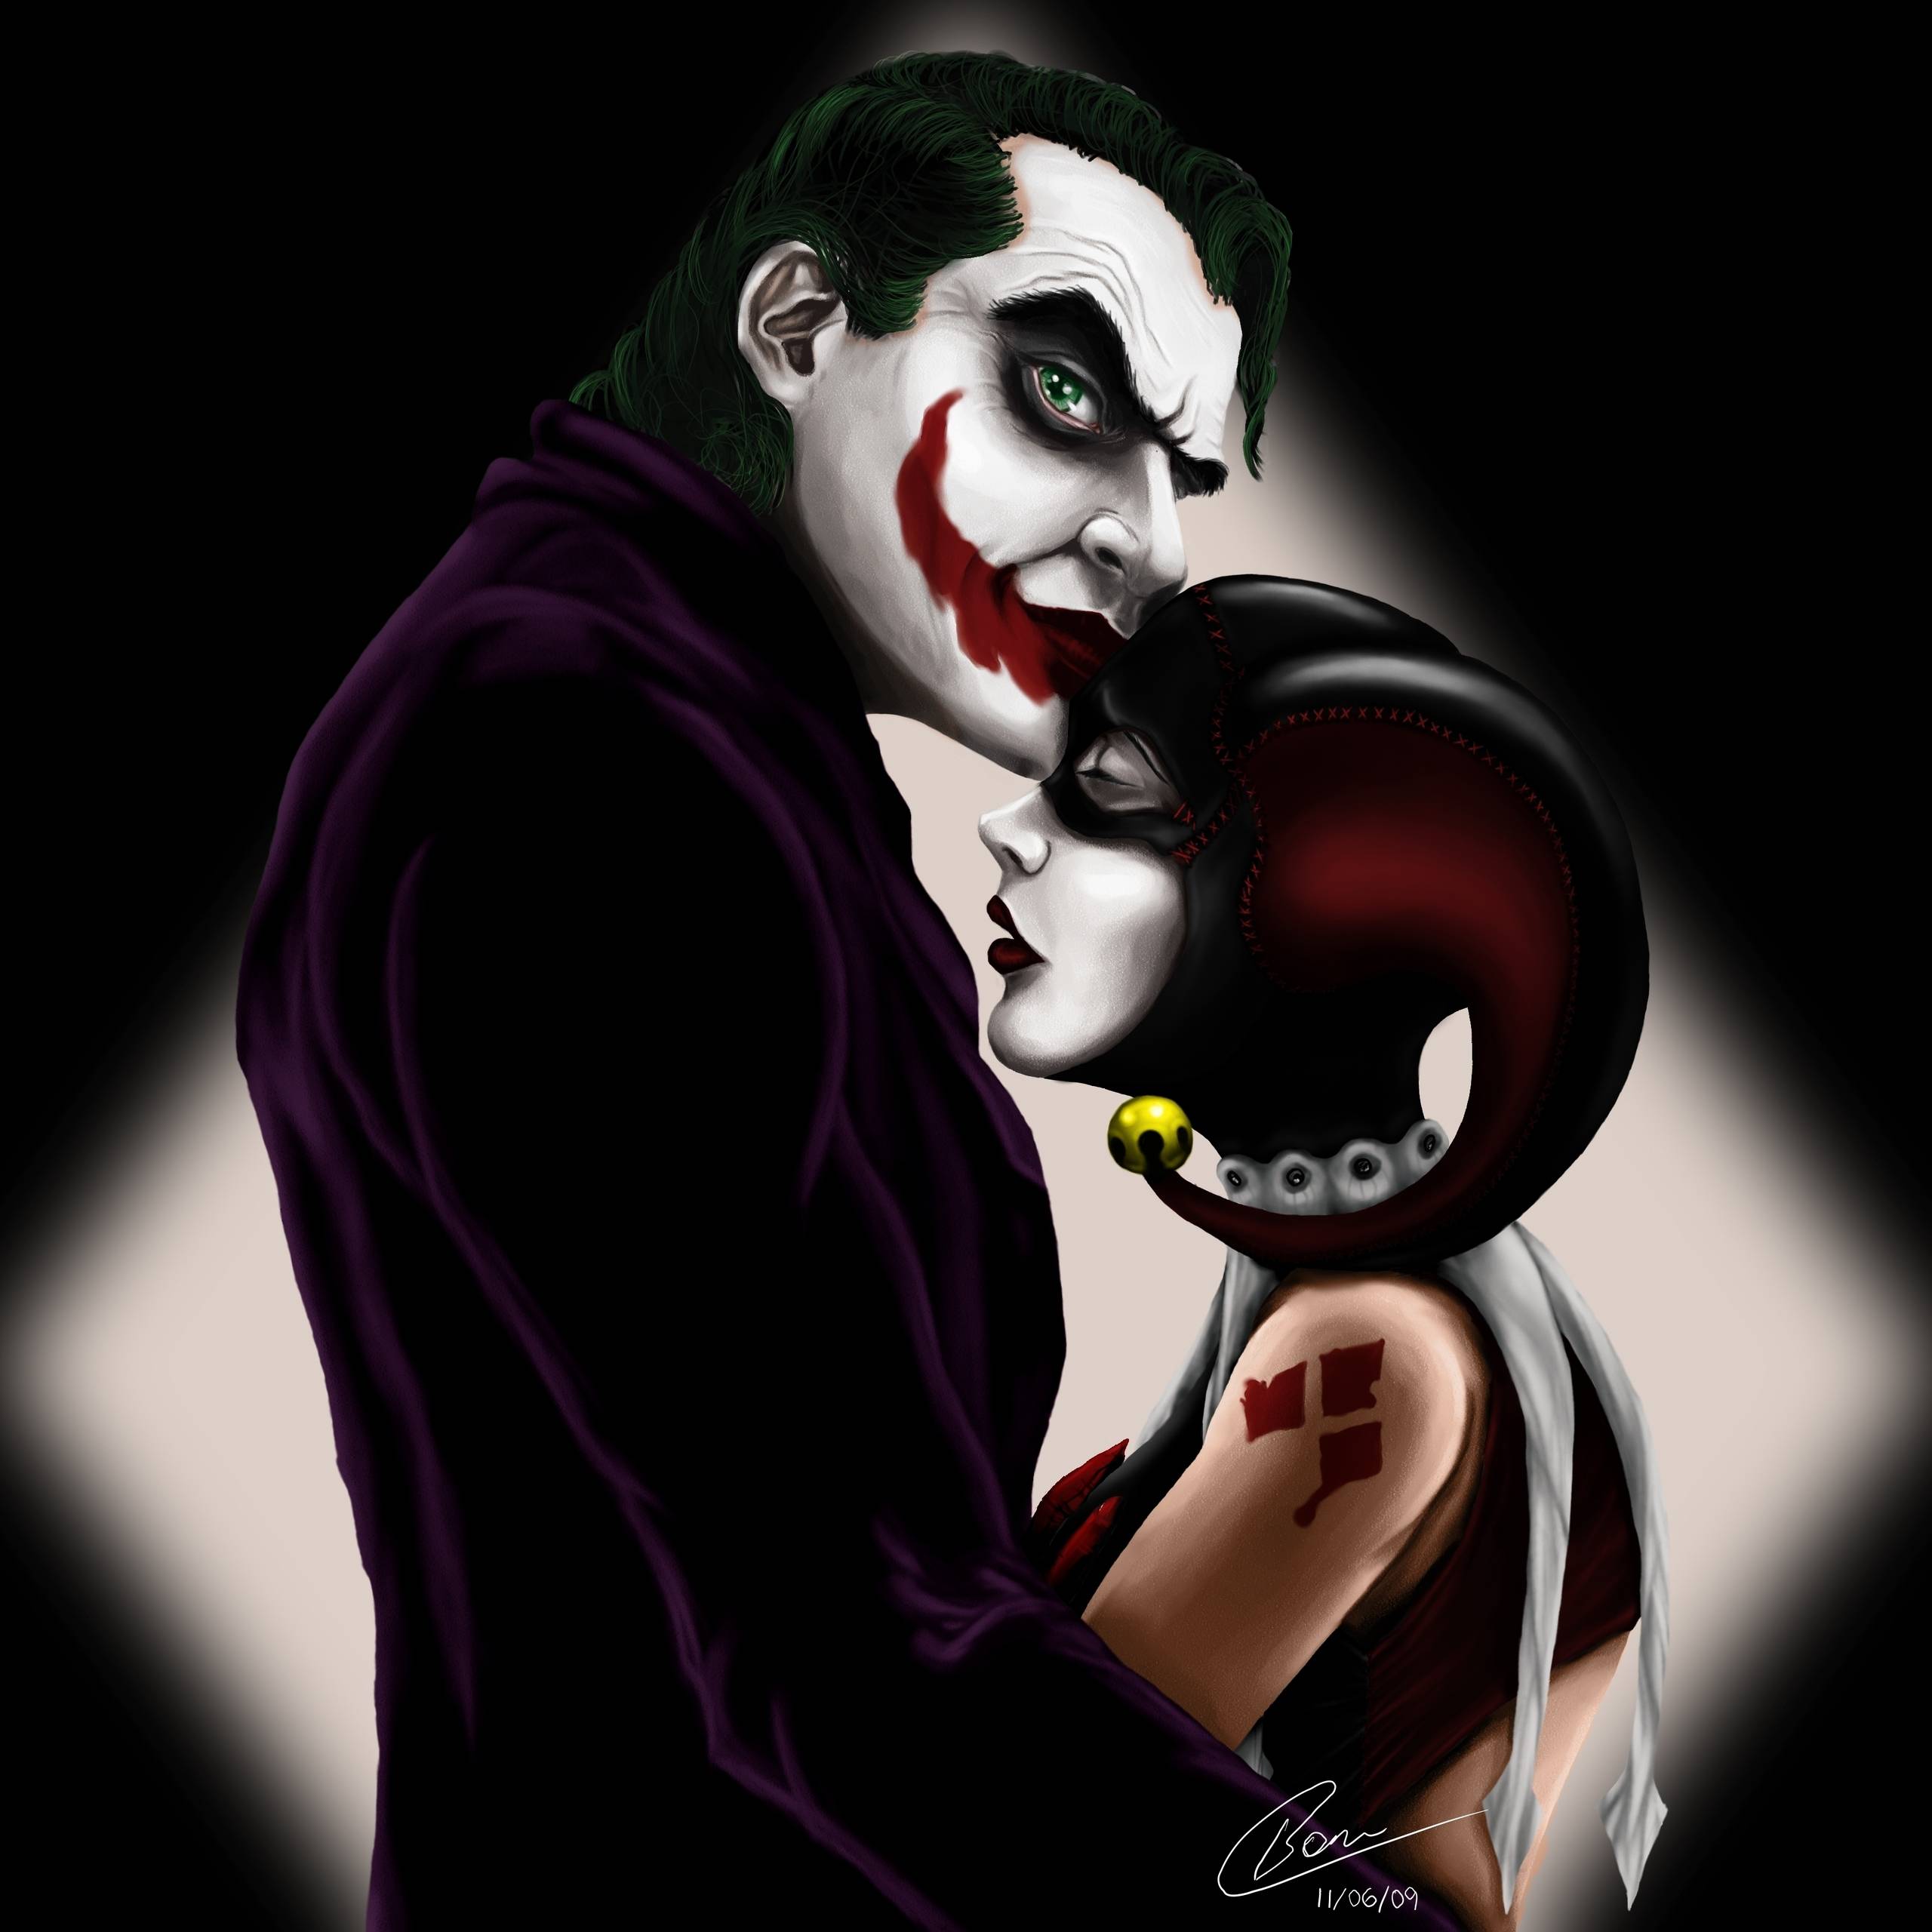 H&J Joker and Harley Quinn Photo